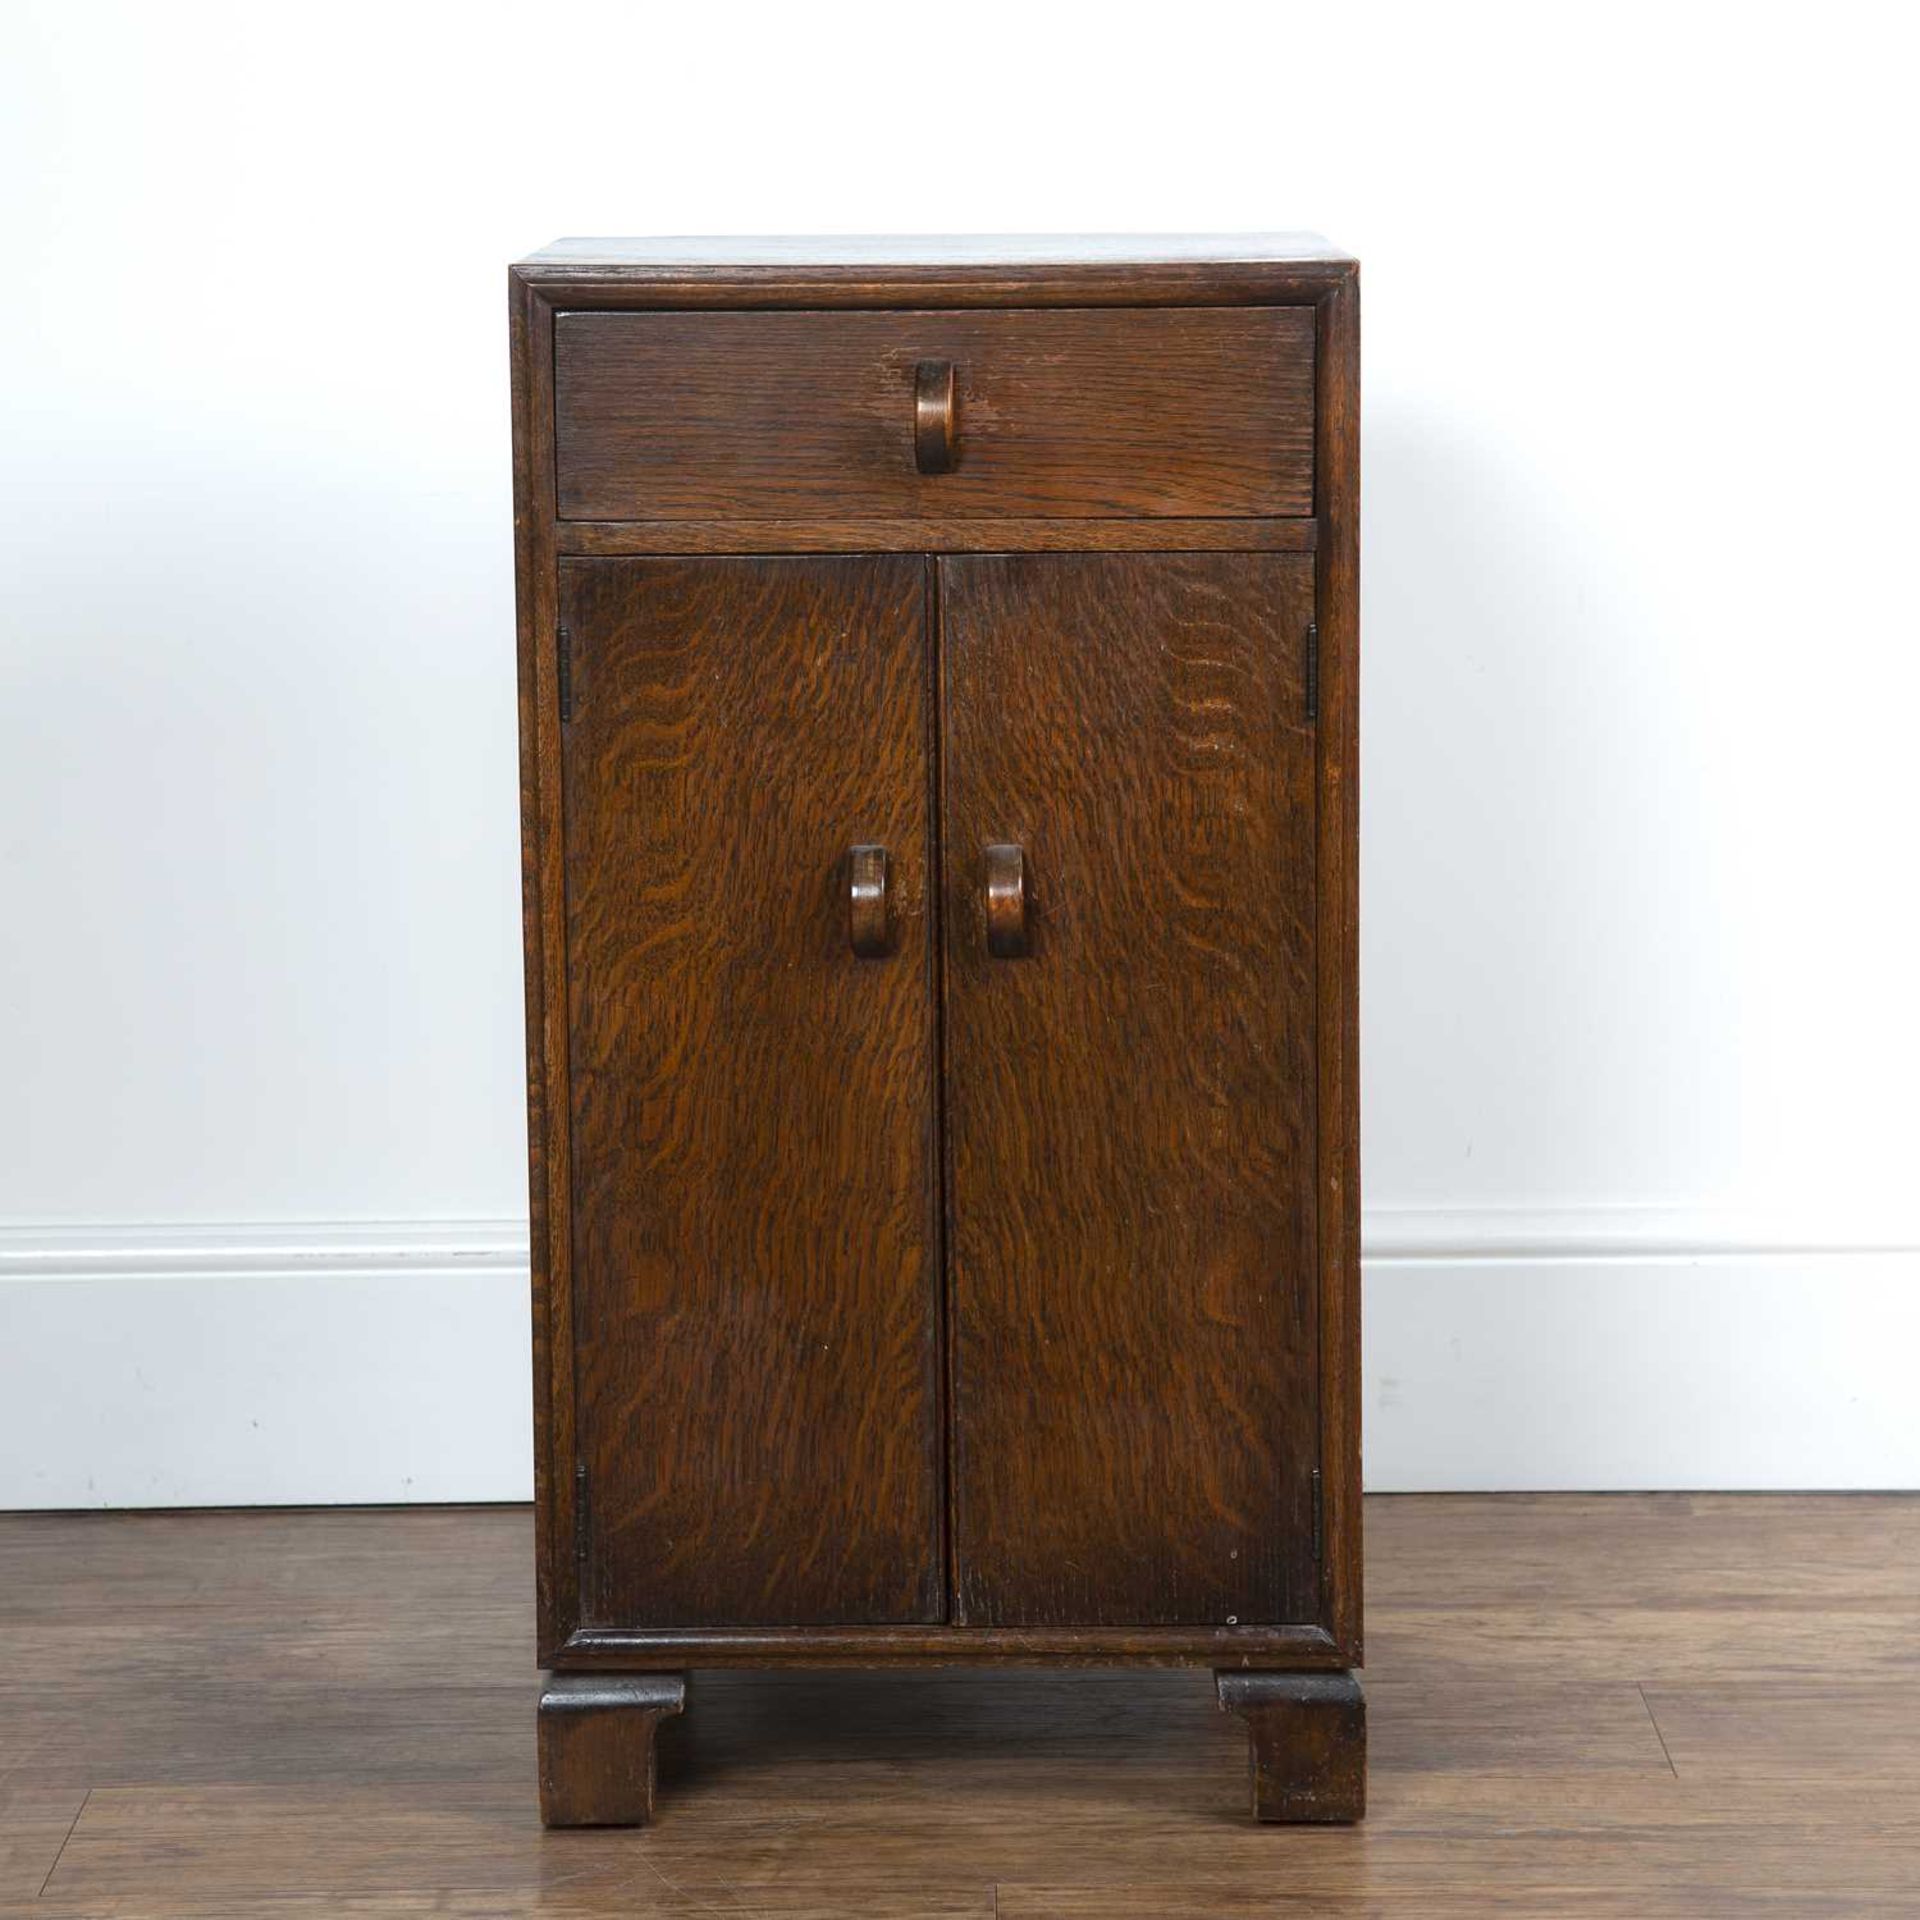 Herbert E. Gibbs dark oak side cupboard or bedside cupboard, with stylised handles, standing on